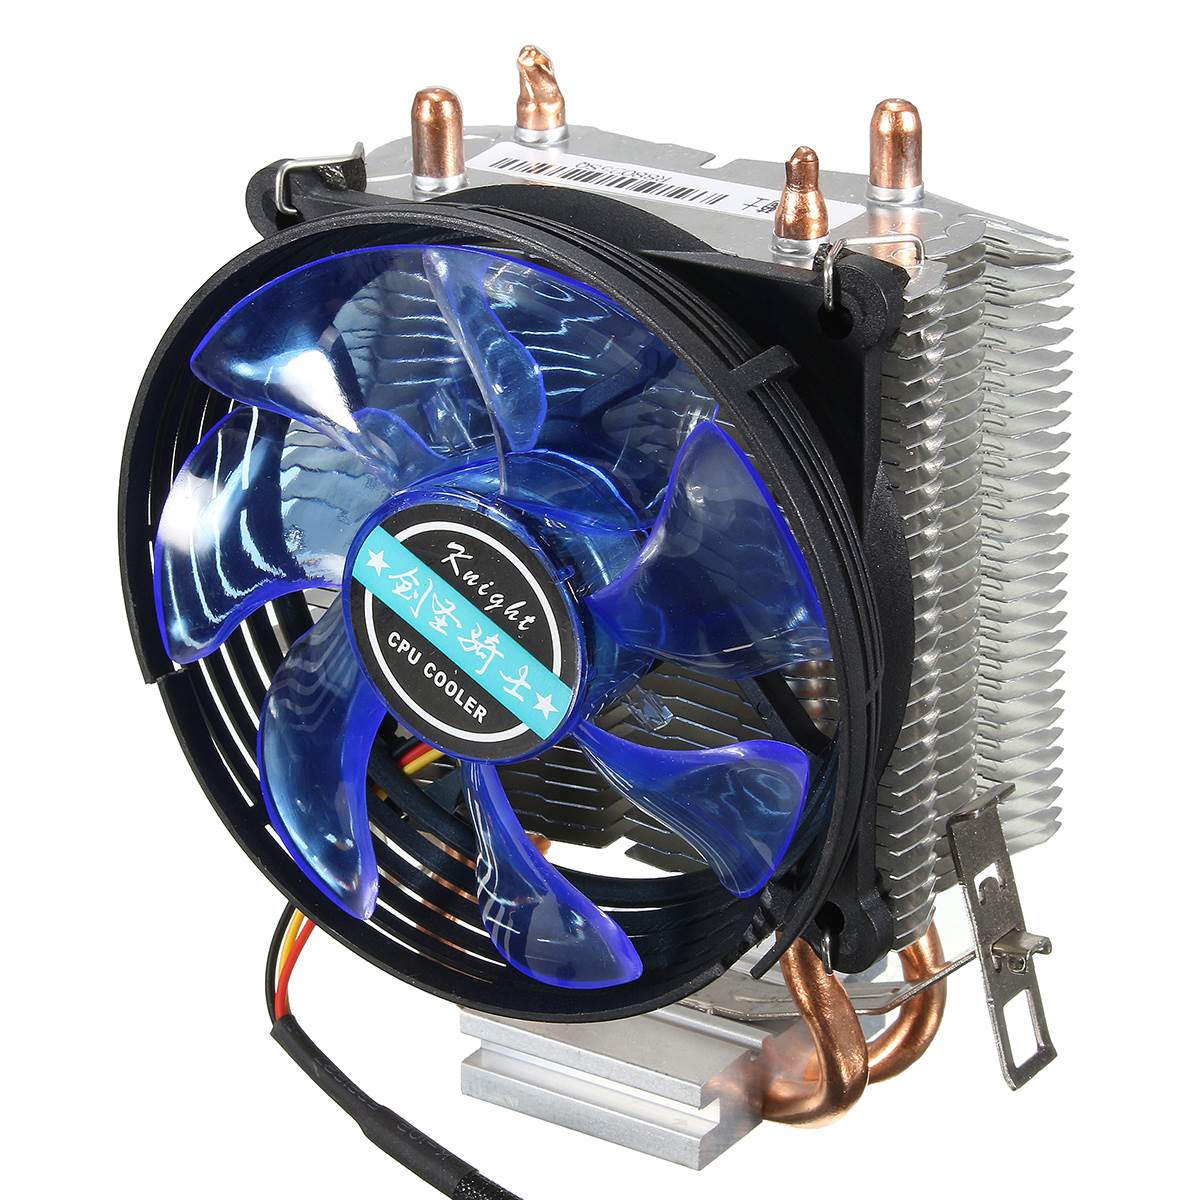 95x95x25mm LED Cooler Cpu Fan Heatsink Copper for Intel LGA775/1156/1155 for AMD AM2/AM2+/AM3